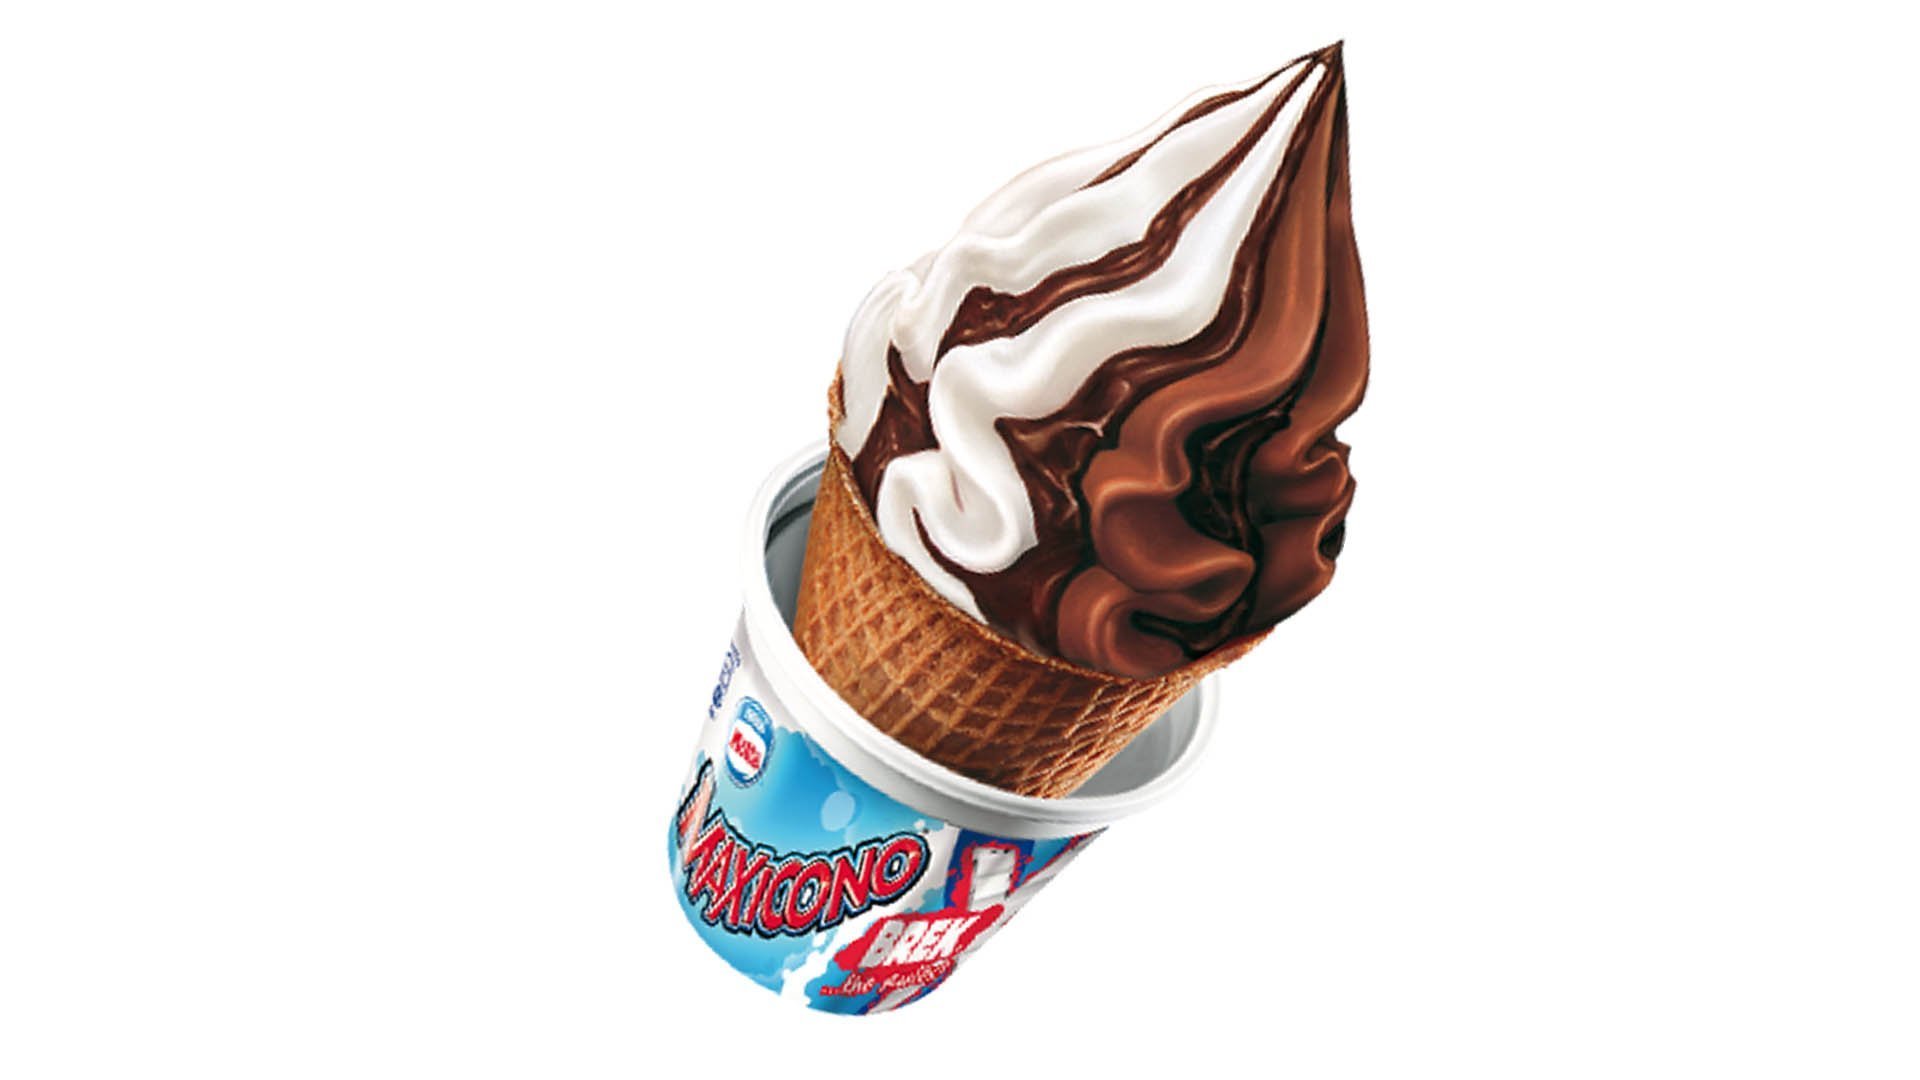 Il Break era uno dei gelati più venduti negli anni 